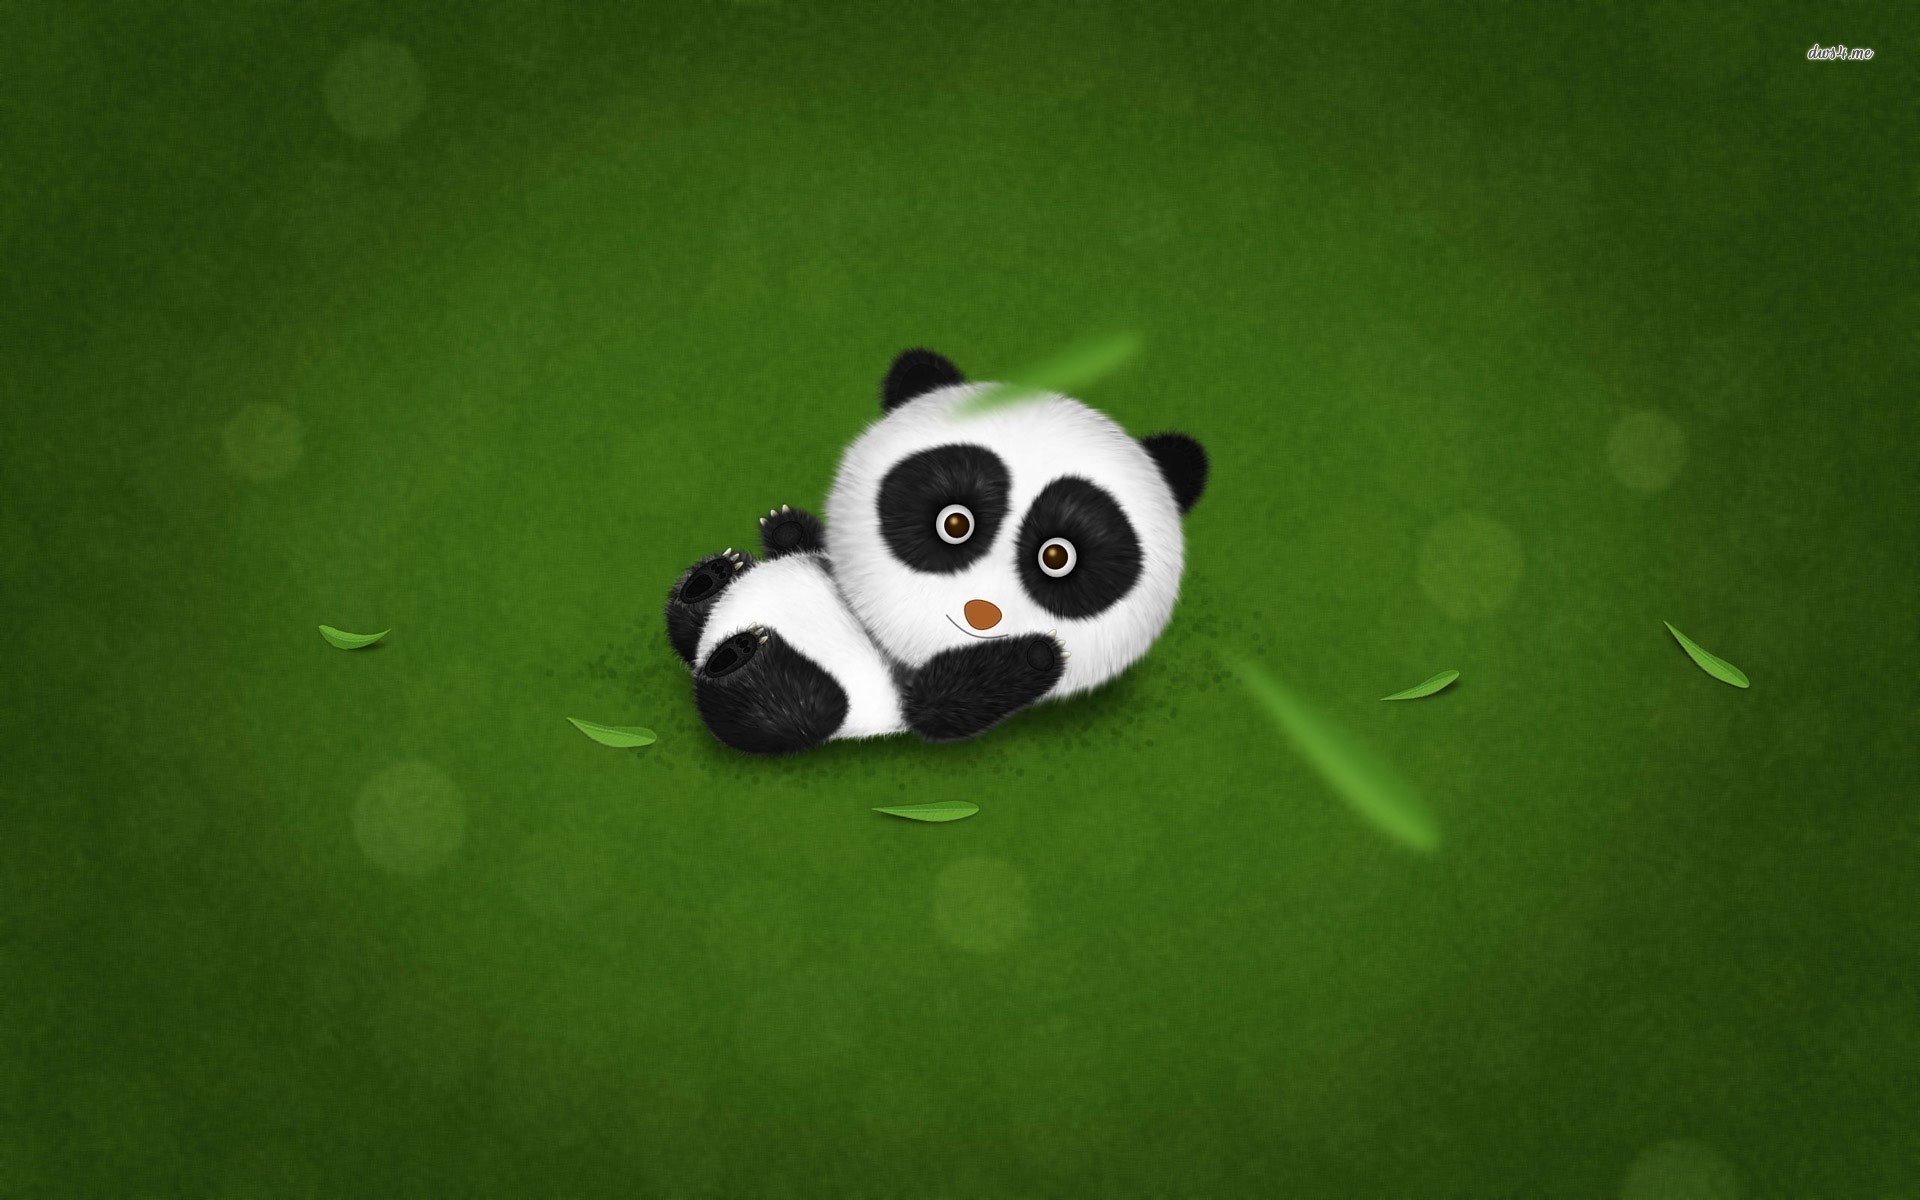 Baby panda wallpaper – Digital Art wallpapers –